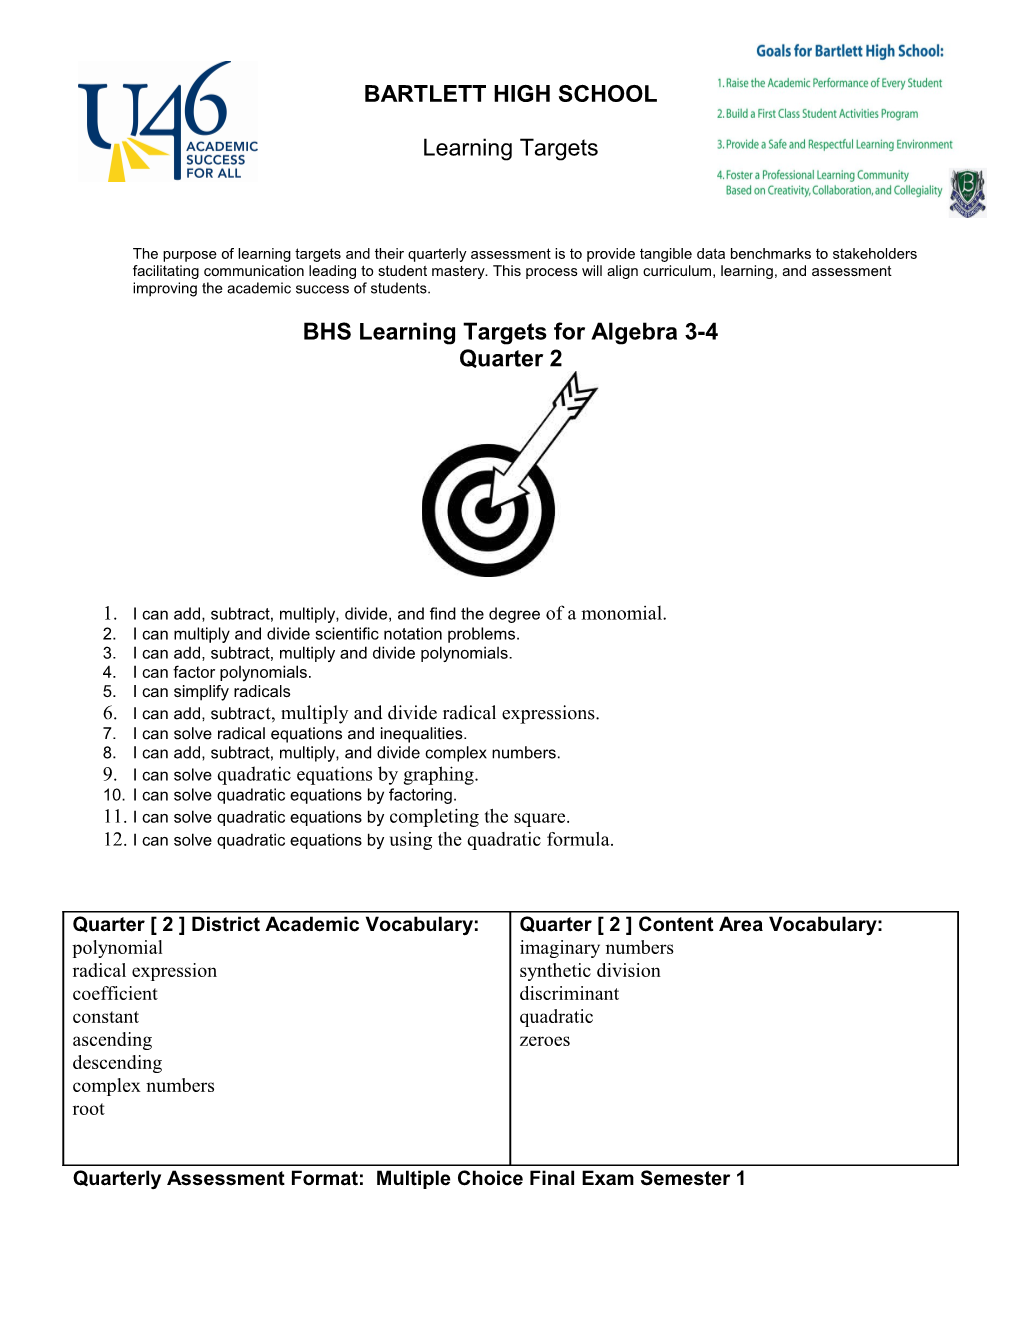 BHS Learning Targets for Algebra 3-4